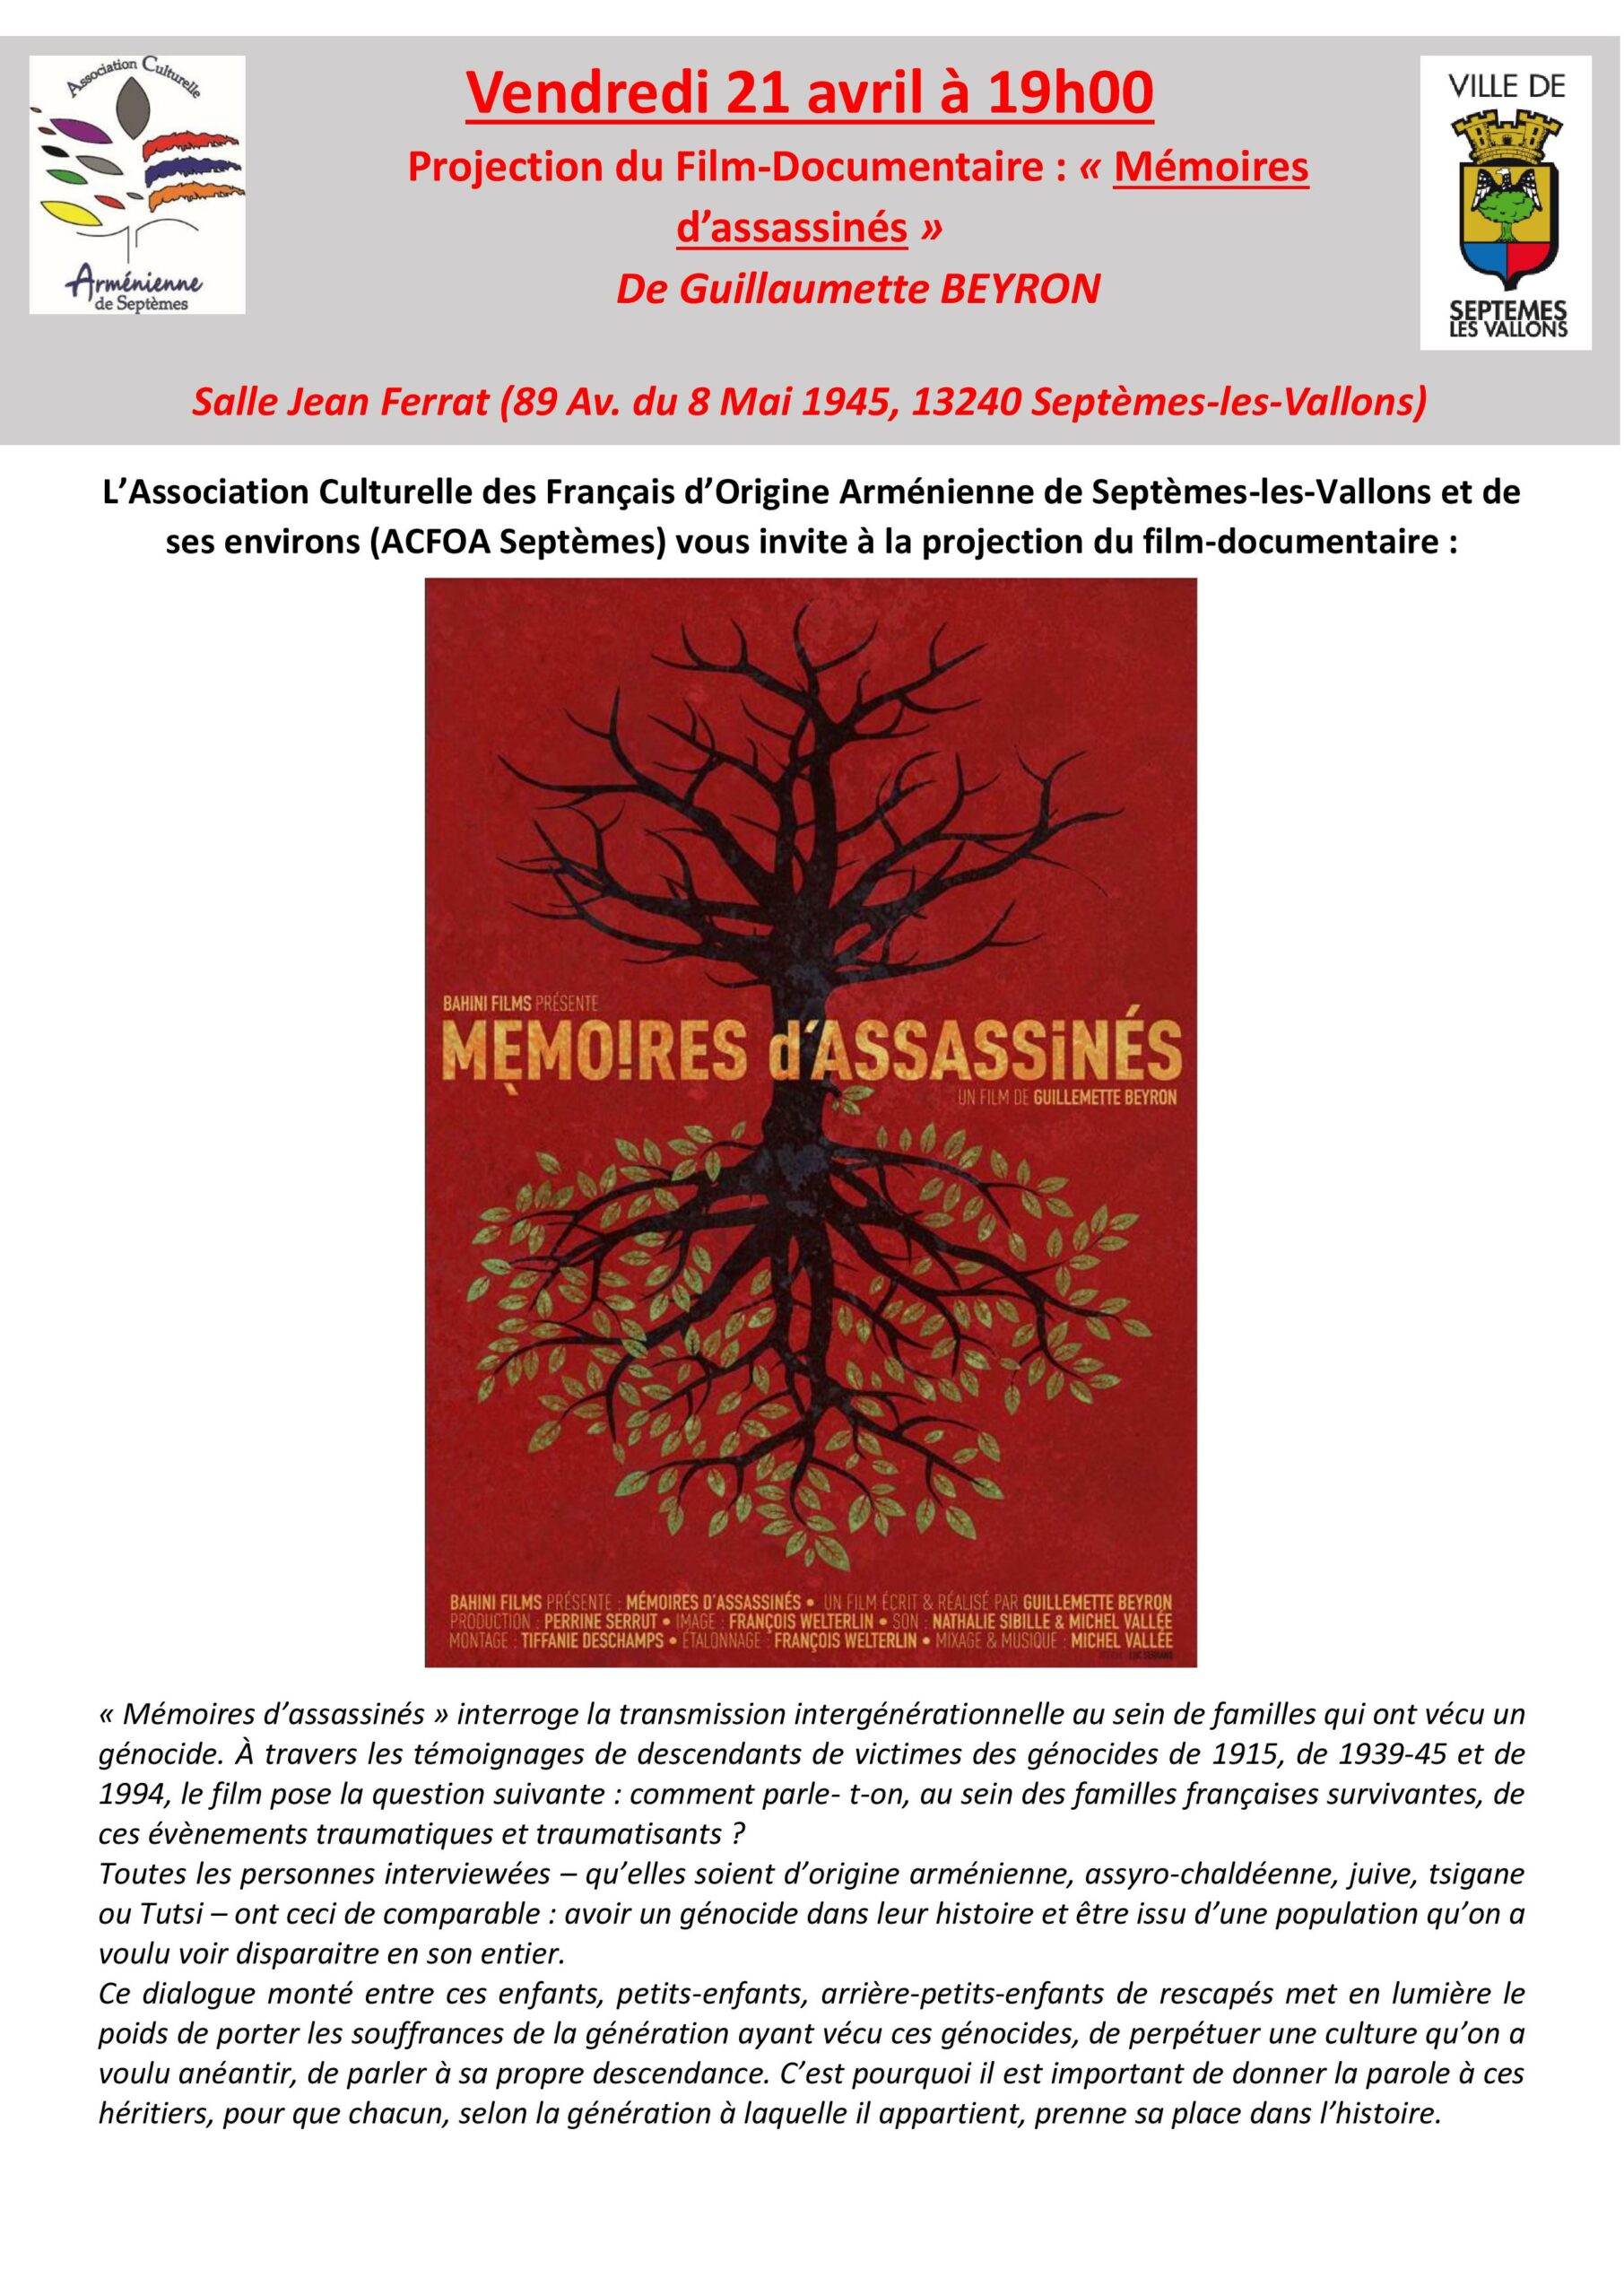 Film-documentaire “Mémoires d’assassinés” de Guillaumette Beyron